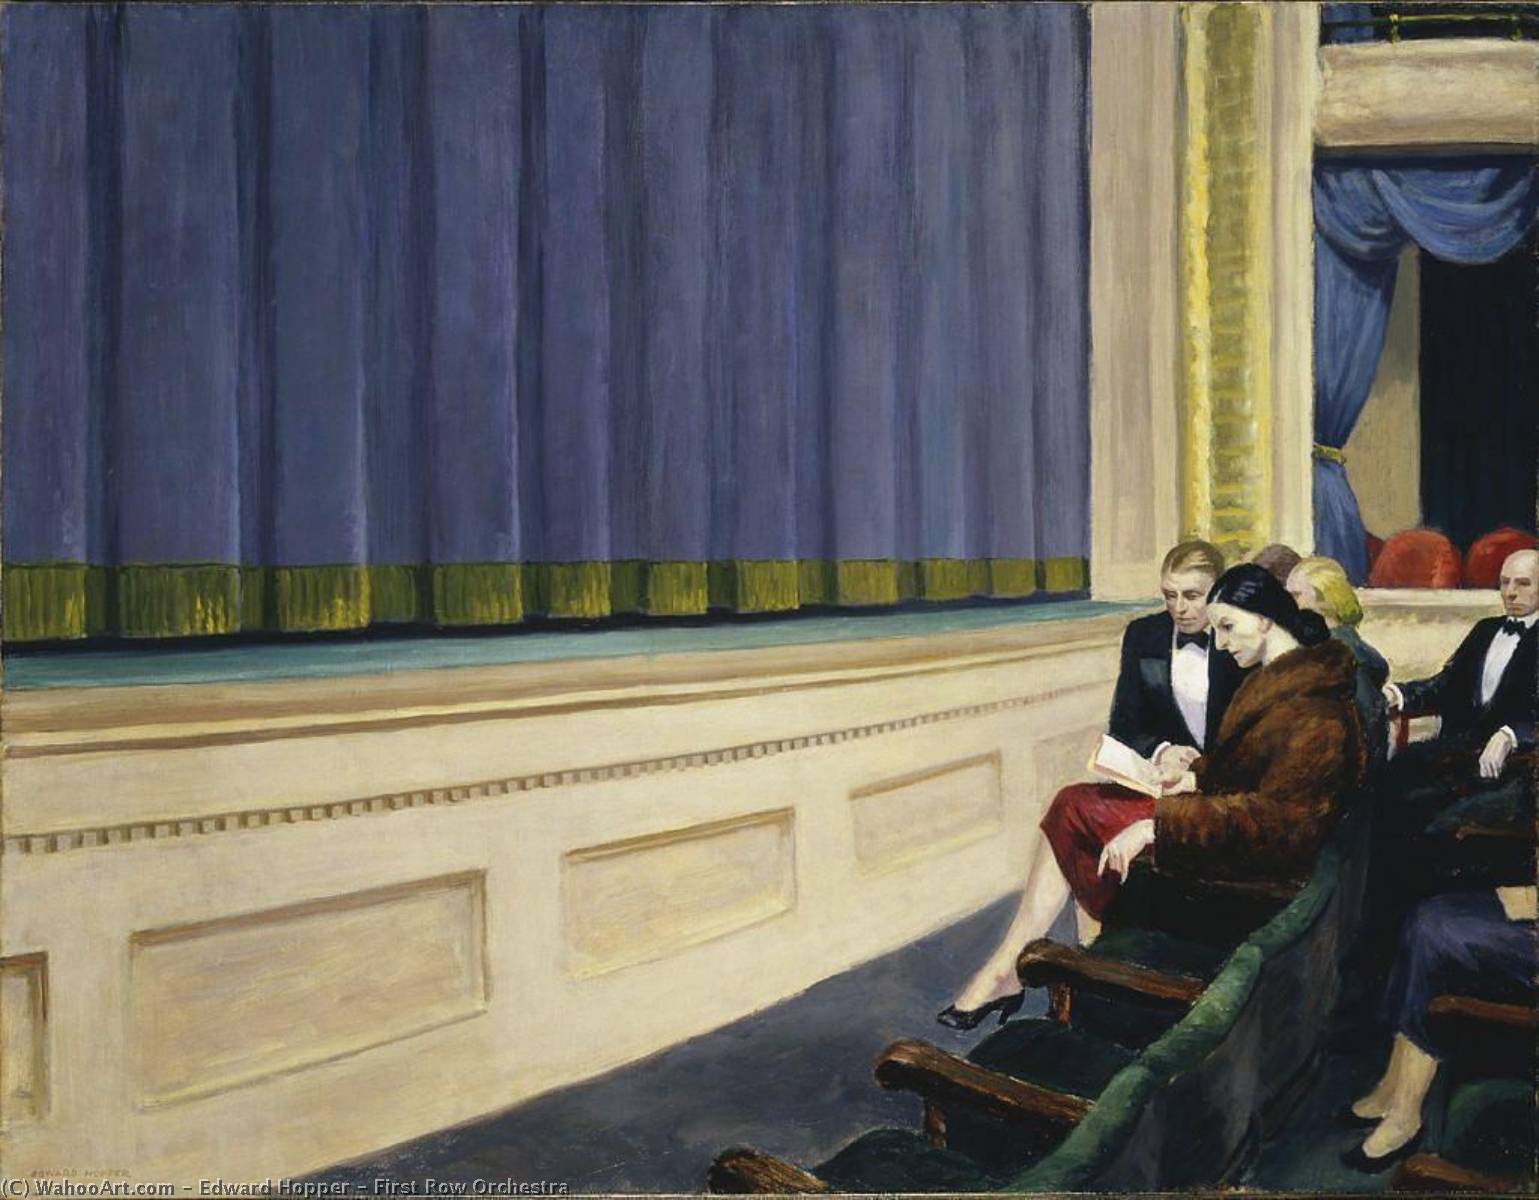 WikiOO.org - Энциклопедия изобразительного искусства - Живопись, Картины  Edward Hopper - Первая строка оркестра